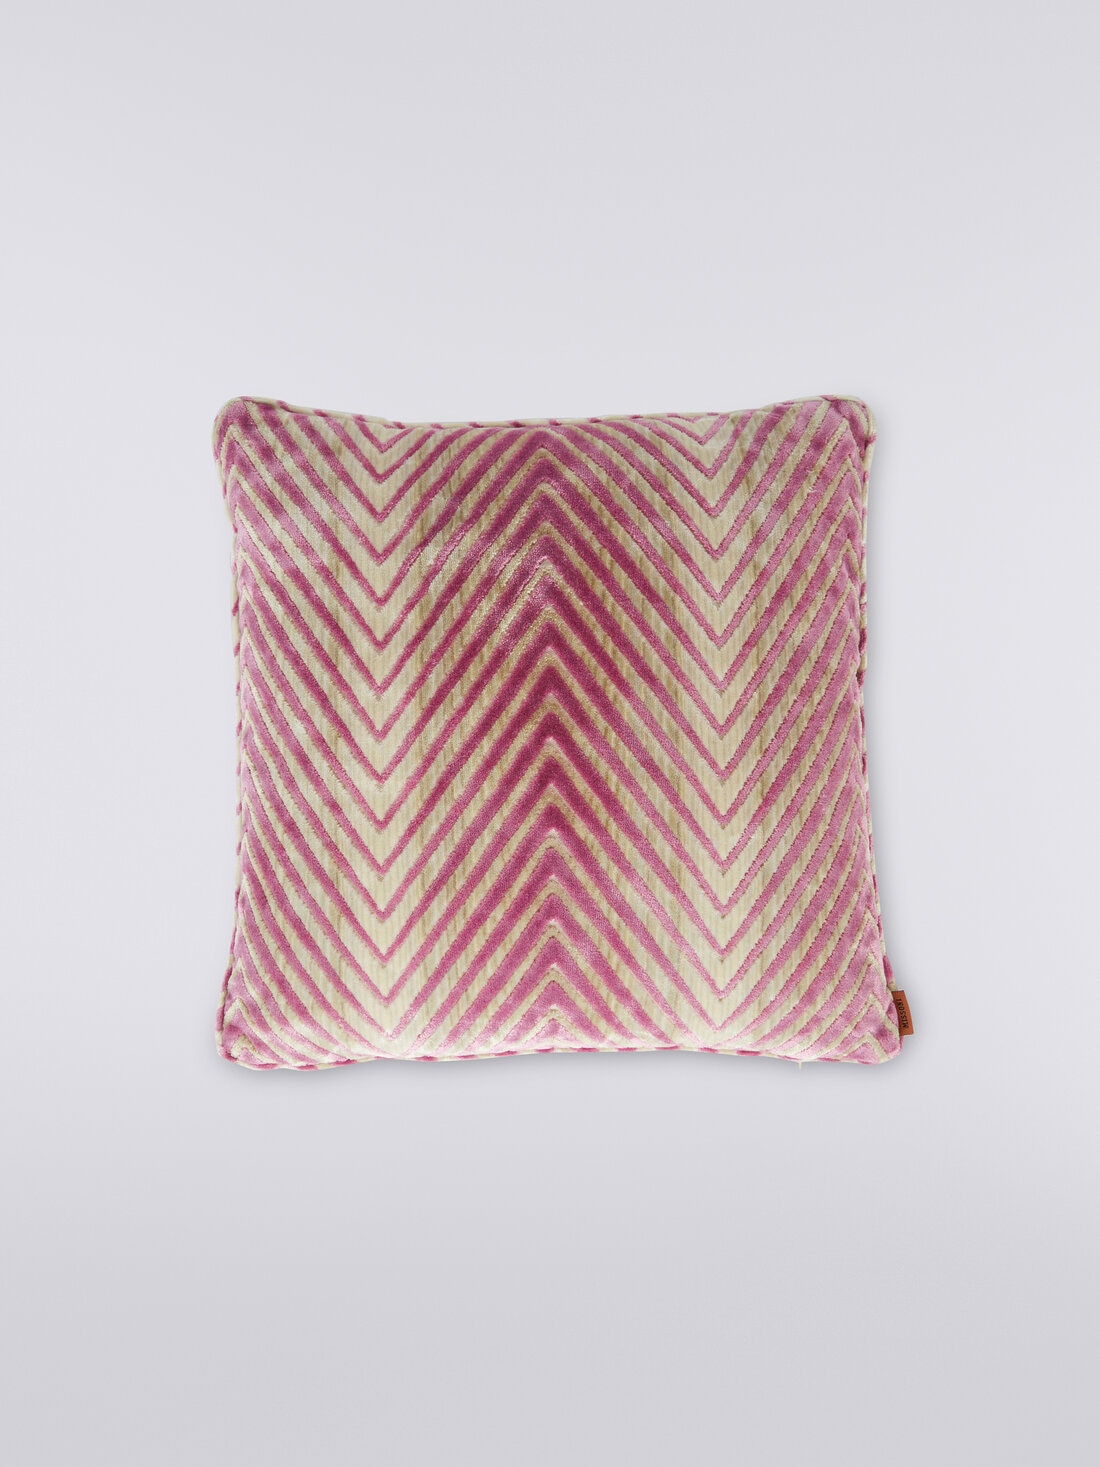 Ziggy 40x40 cm viscose blend zigzag cushion, Multicoloured  - 8051575837074 - 0